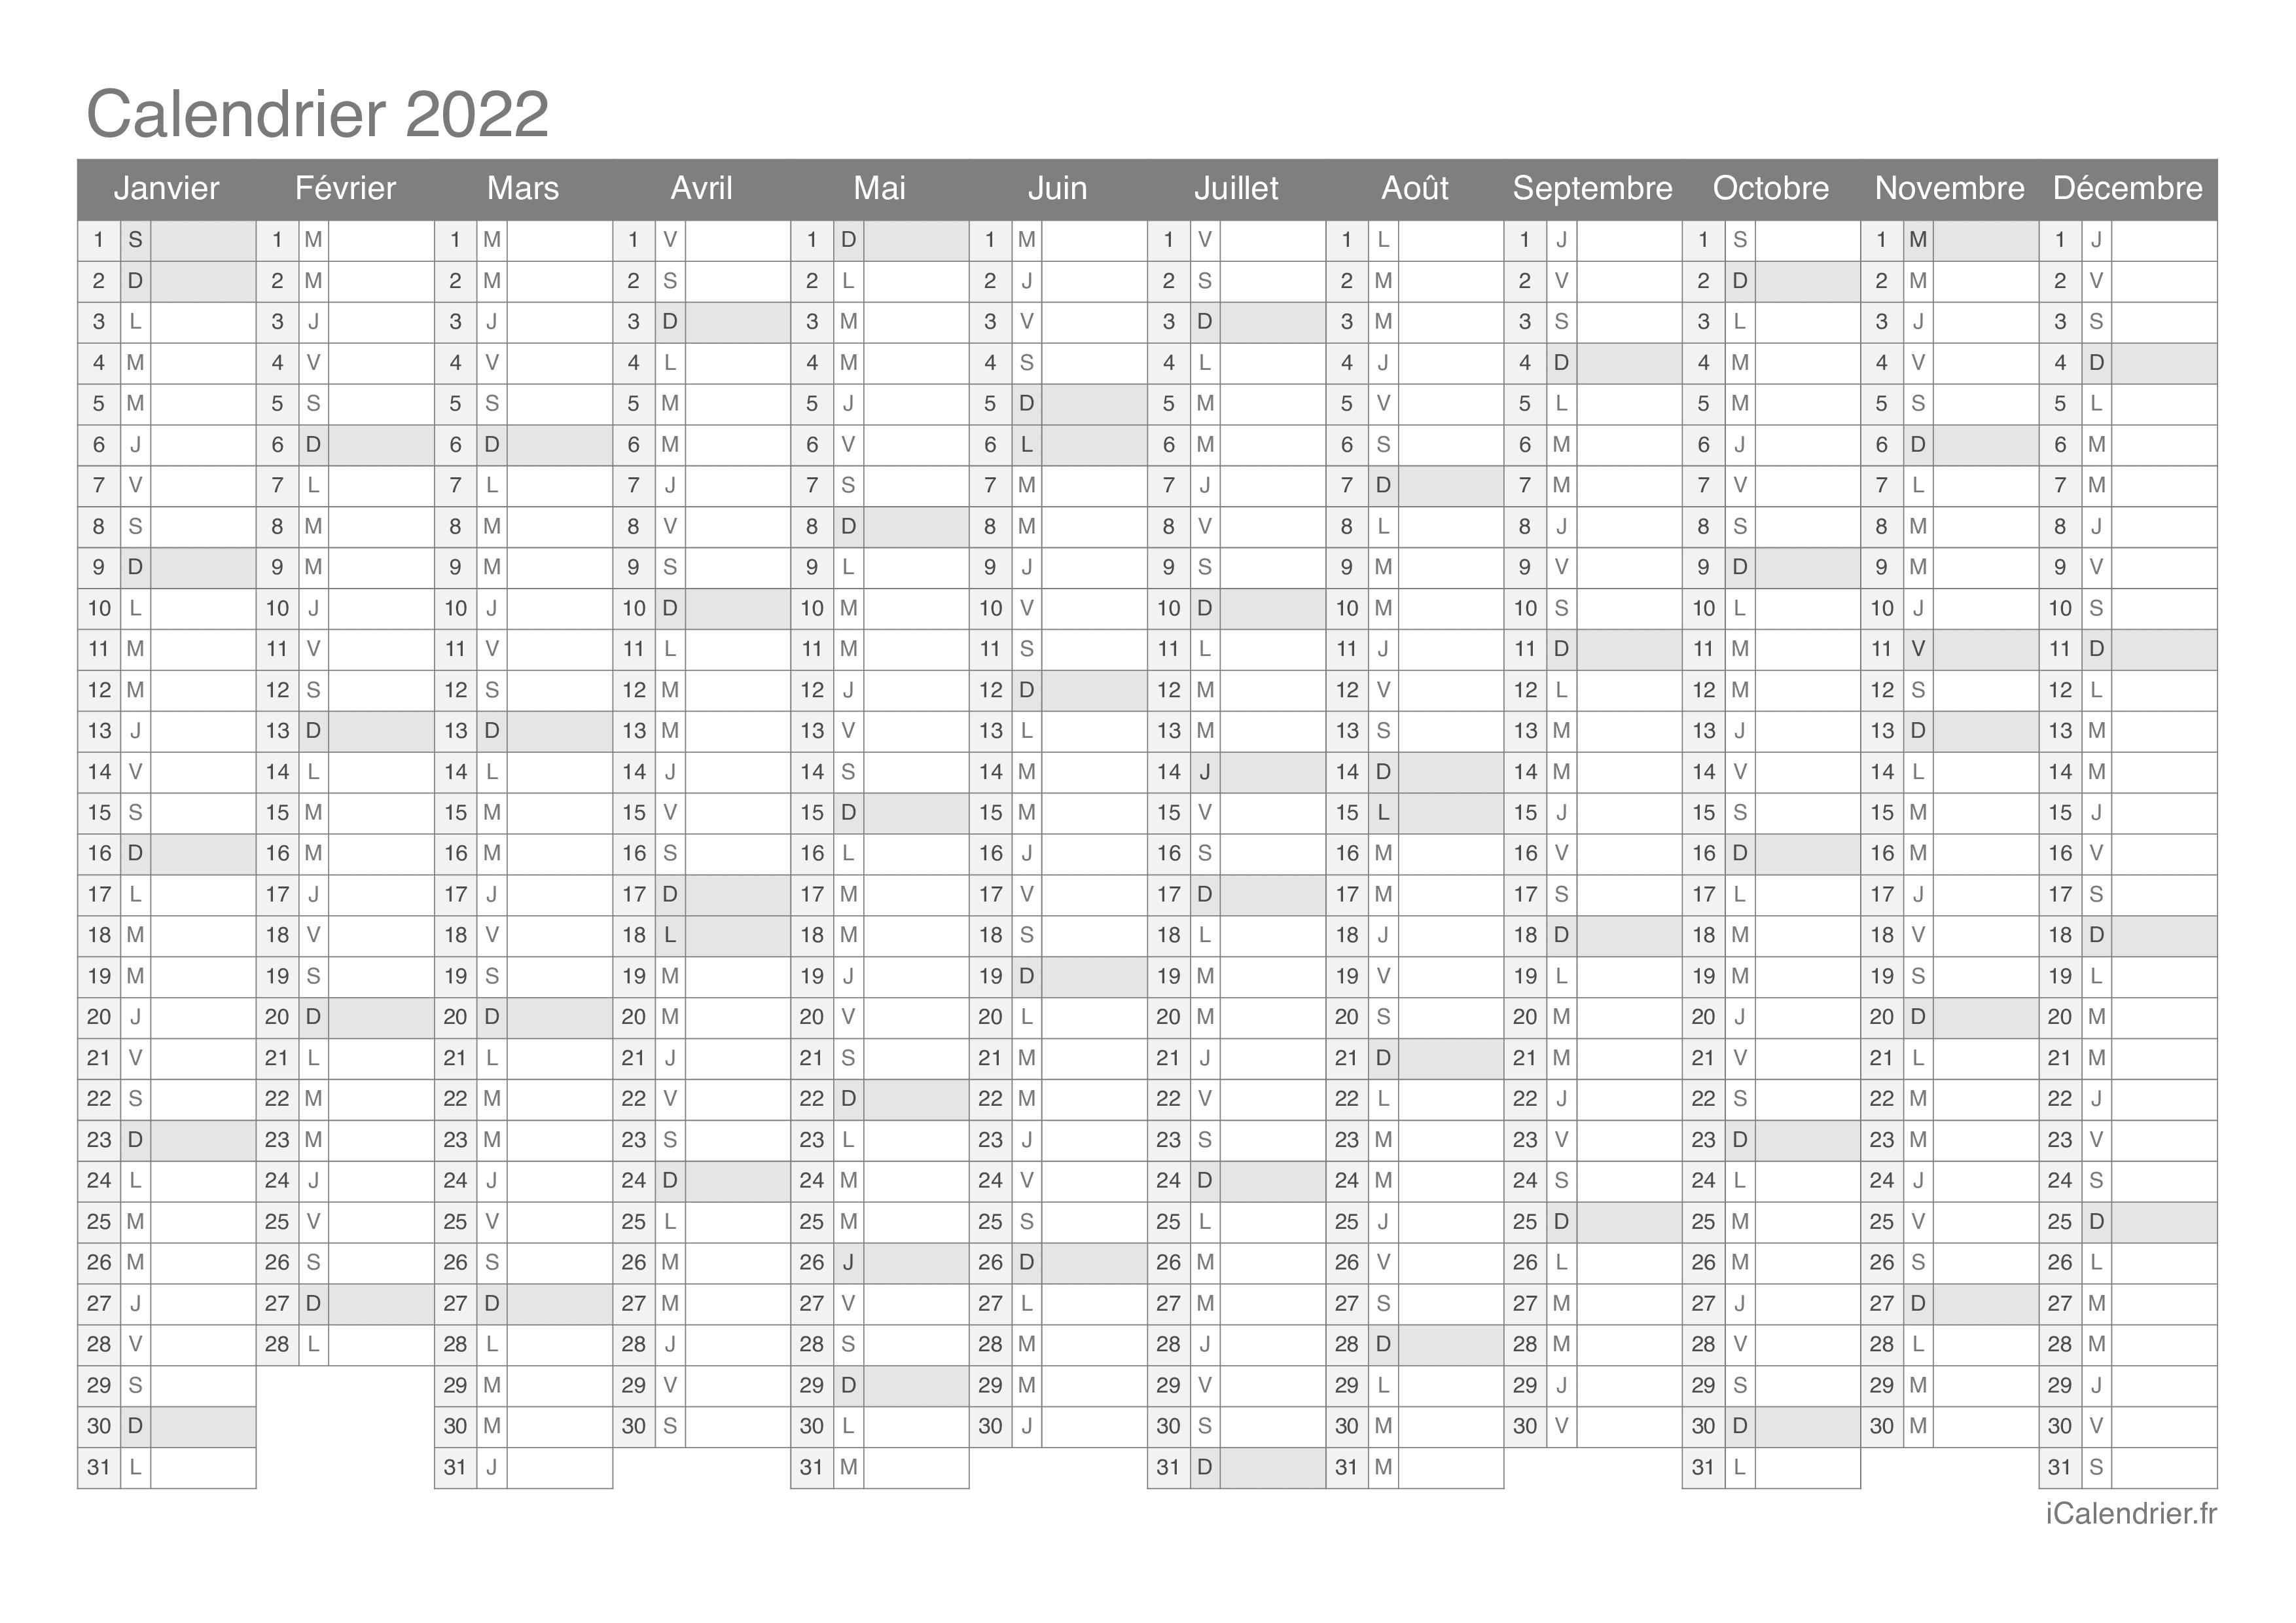 Calendrier 2022 à Colorier Calendrier 2022 à imprimer PDF et Excel   iCalendrier